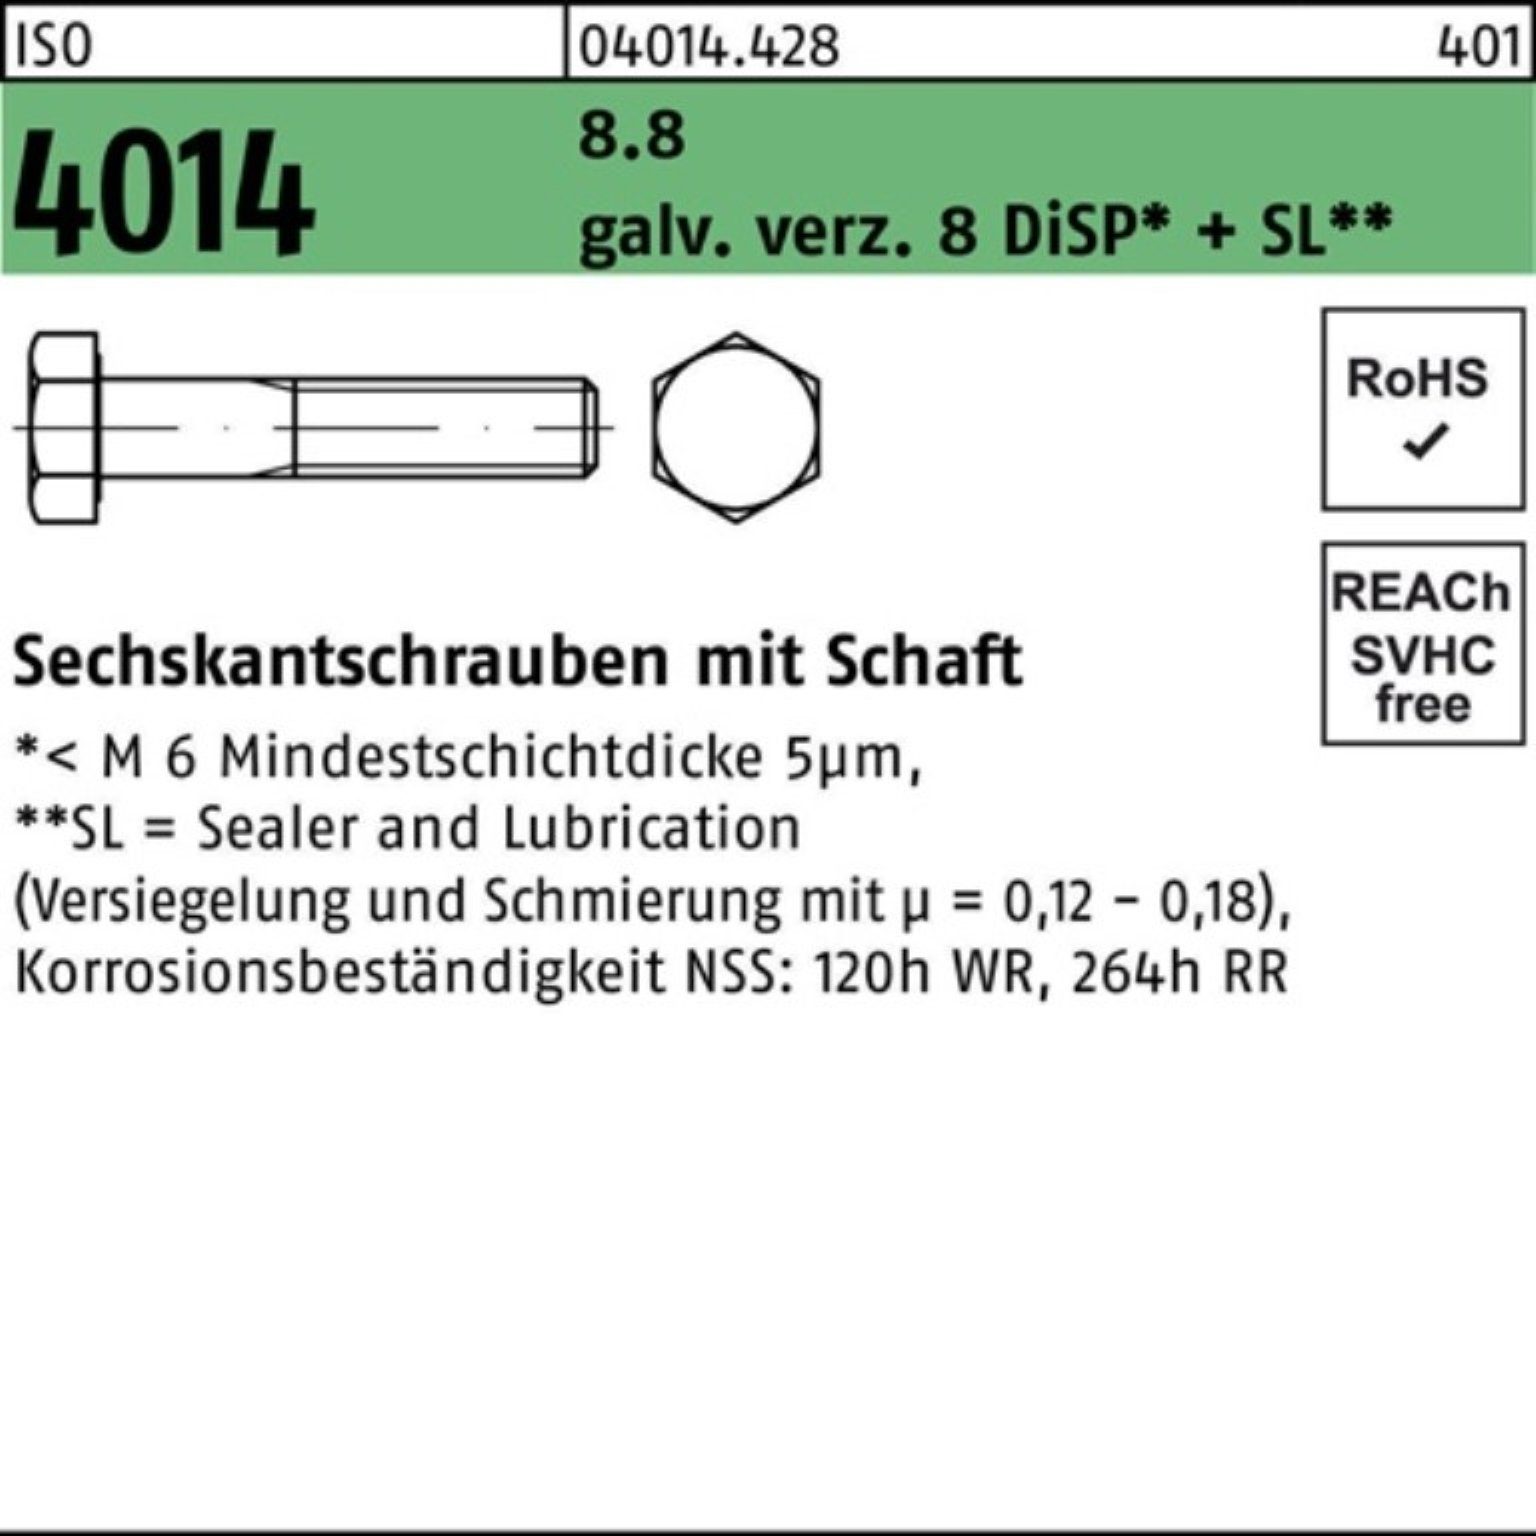 Bufab Sechskantschraube 100er 8 M20x180 Schaft Sechskantschraube Pack 4014 8.8 ISO galv.verz